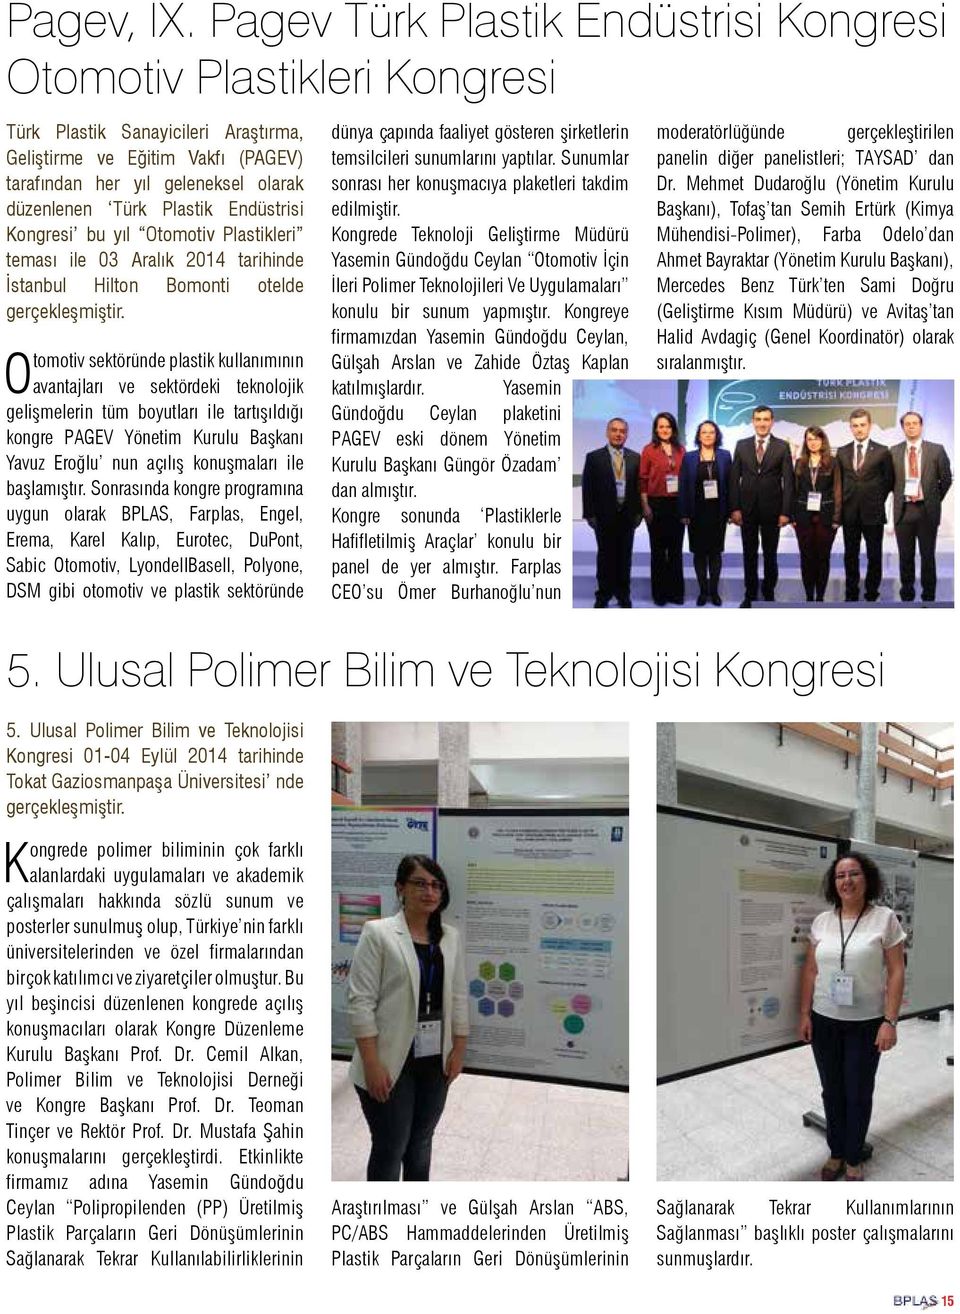 Plastik Endüstrisi Kongresi bu yıl Otomotiv Plastikleri teması ile 03 Aralık 2014 tarihinde İstanbul Hilton Bomonti otelde gerçekleşmiştir.